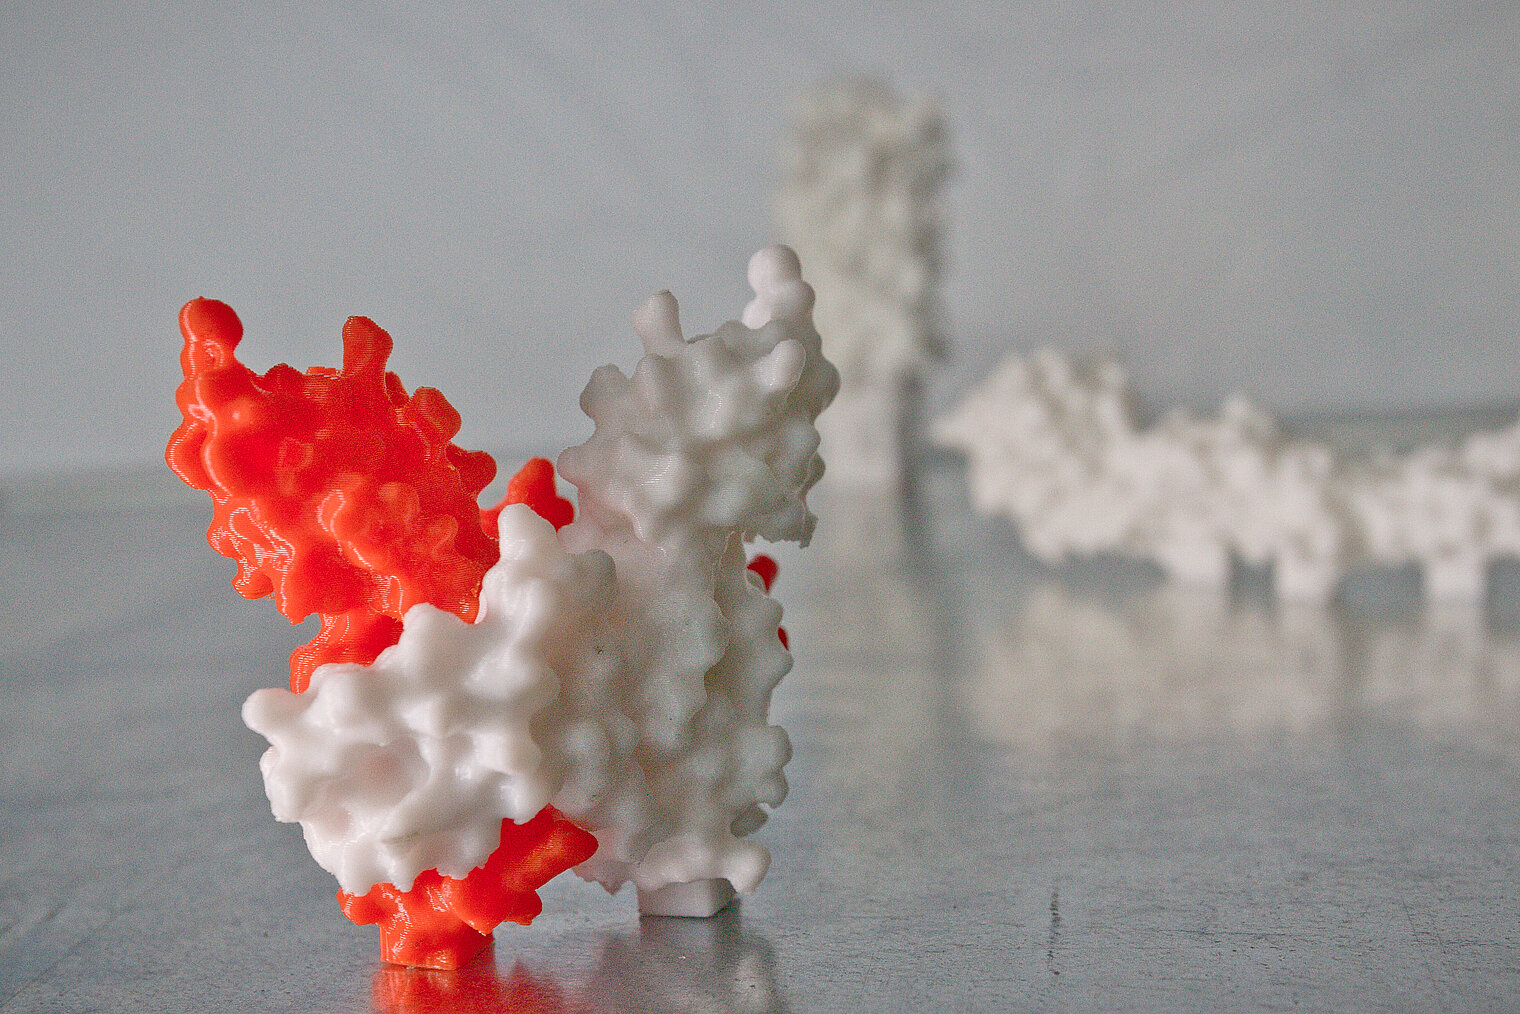 3D-Modelle von am HZI gelösten Proteinstrukturen.